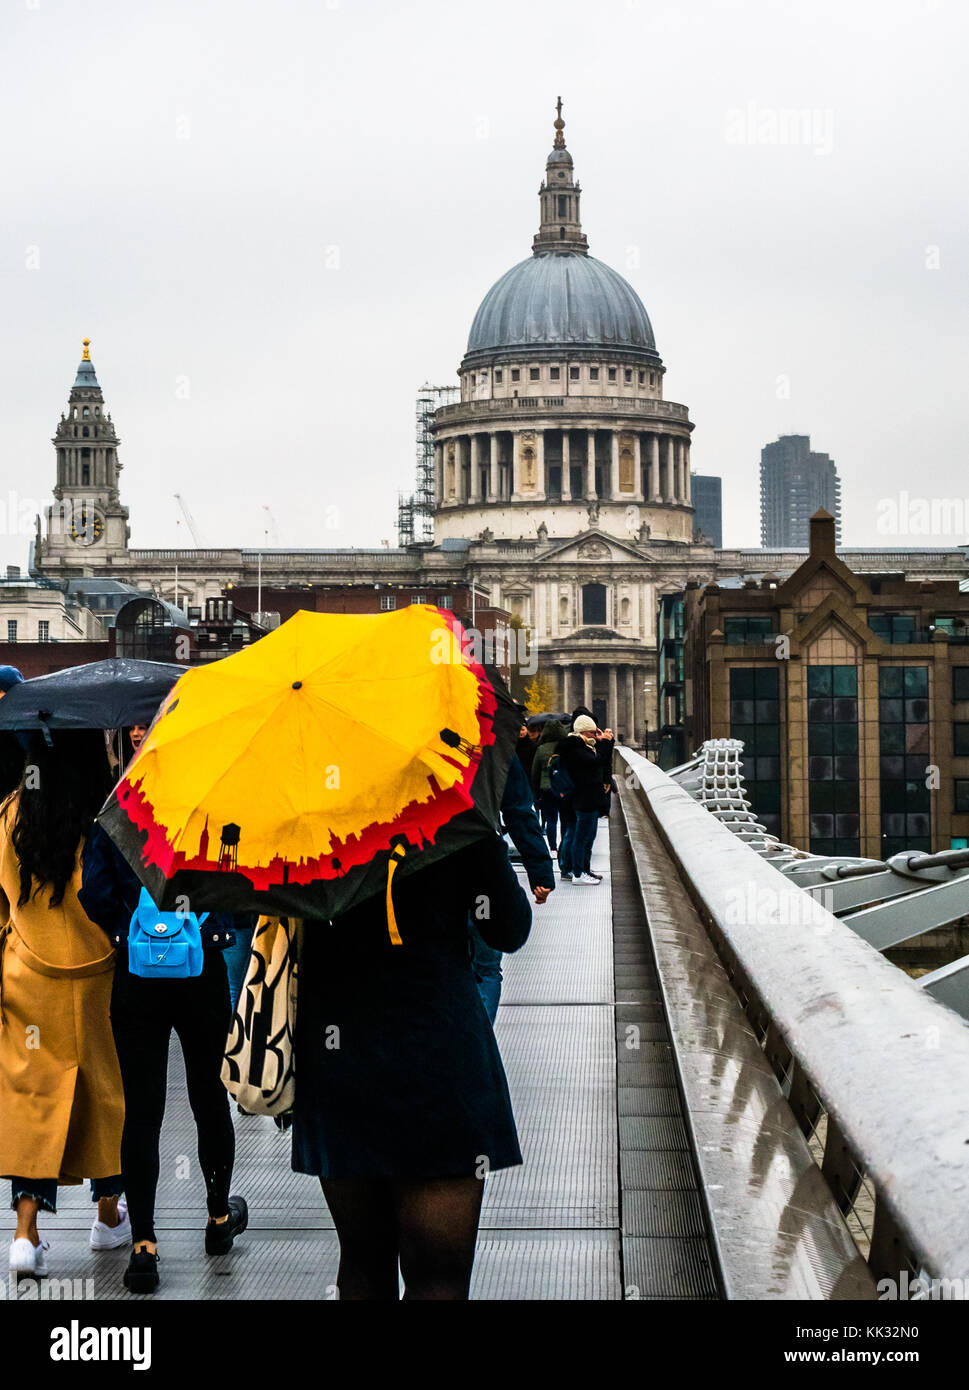 Menschen zu Fuß über die Millennium Bridge an regnerischen Tag mit hellen Sonnenschirmen für die St Paul's Cathedral und die City von London Schule, Themse, England, Großbritannien Stockfoto